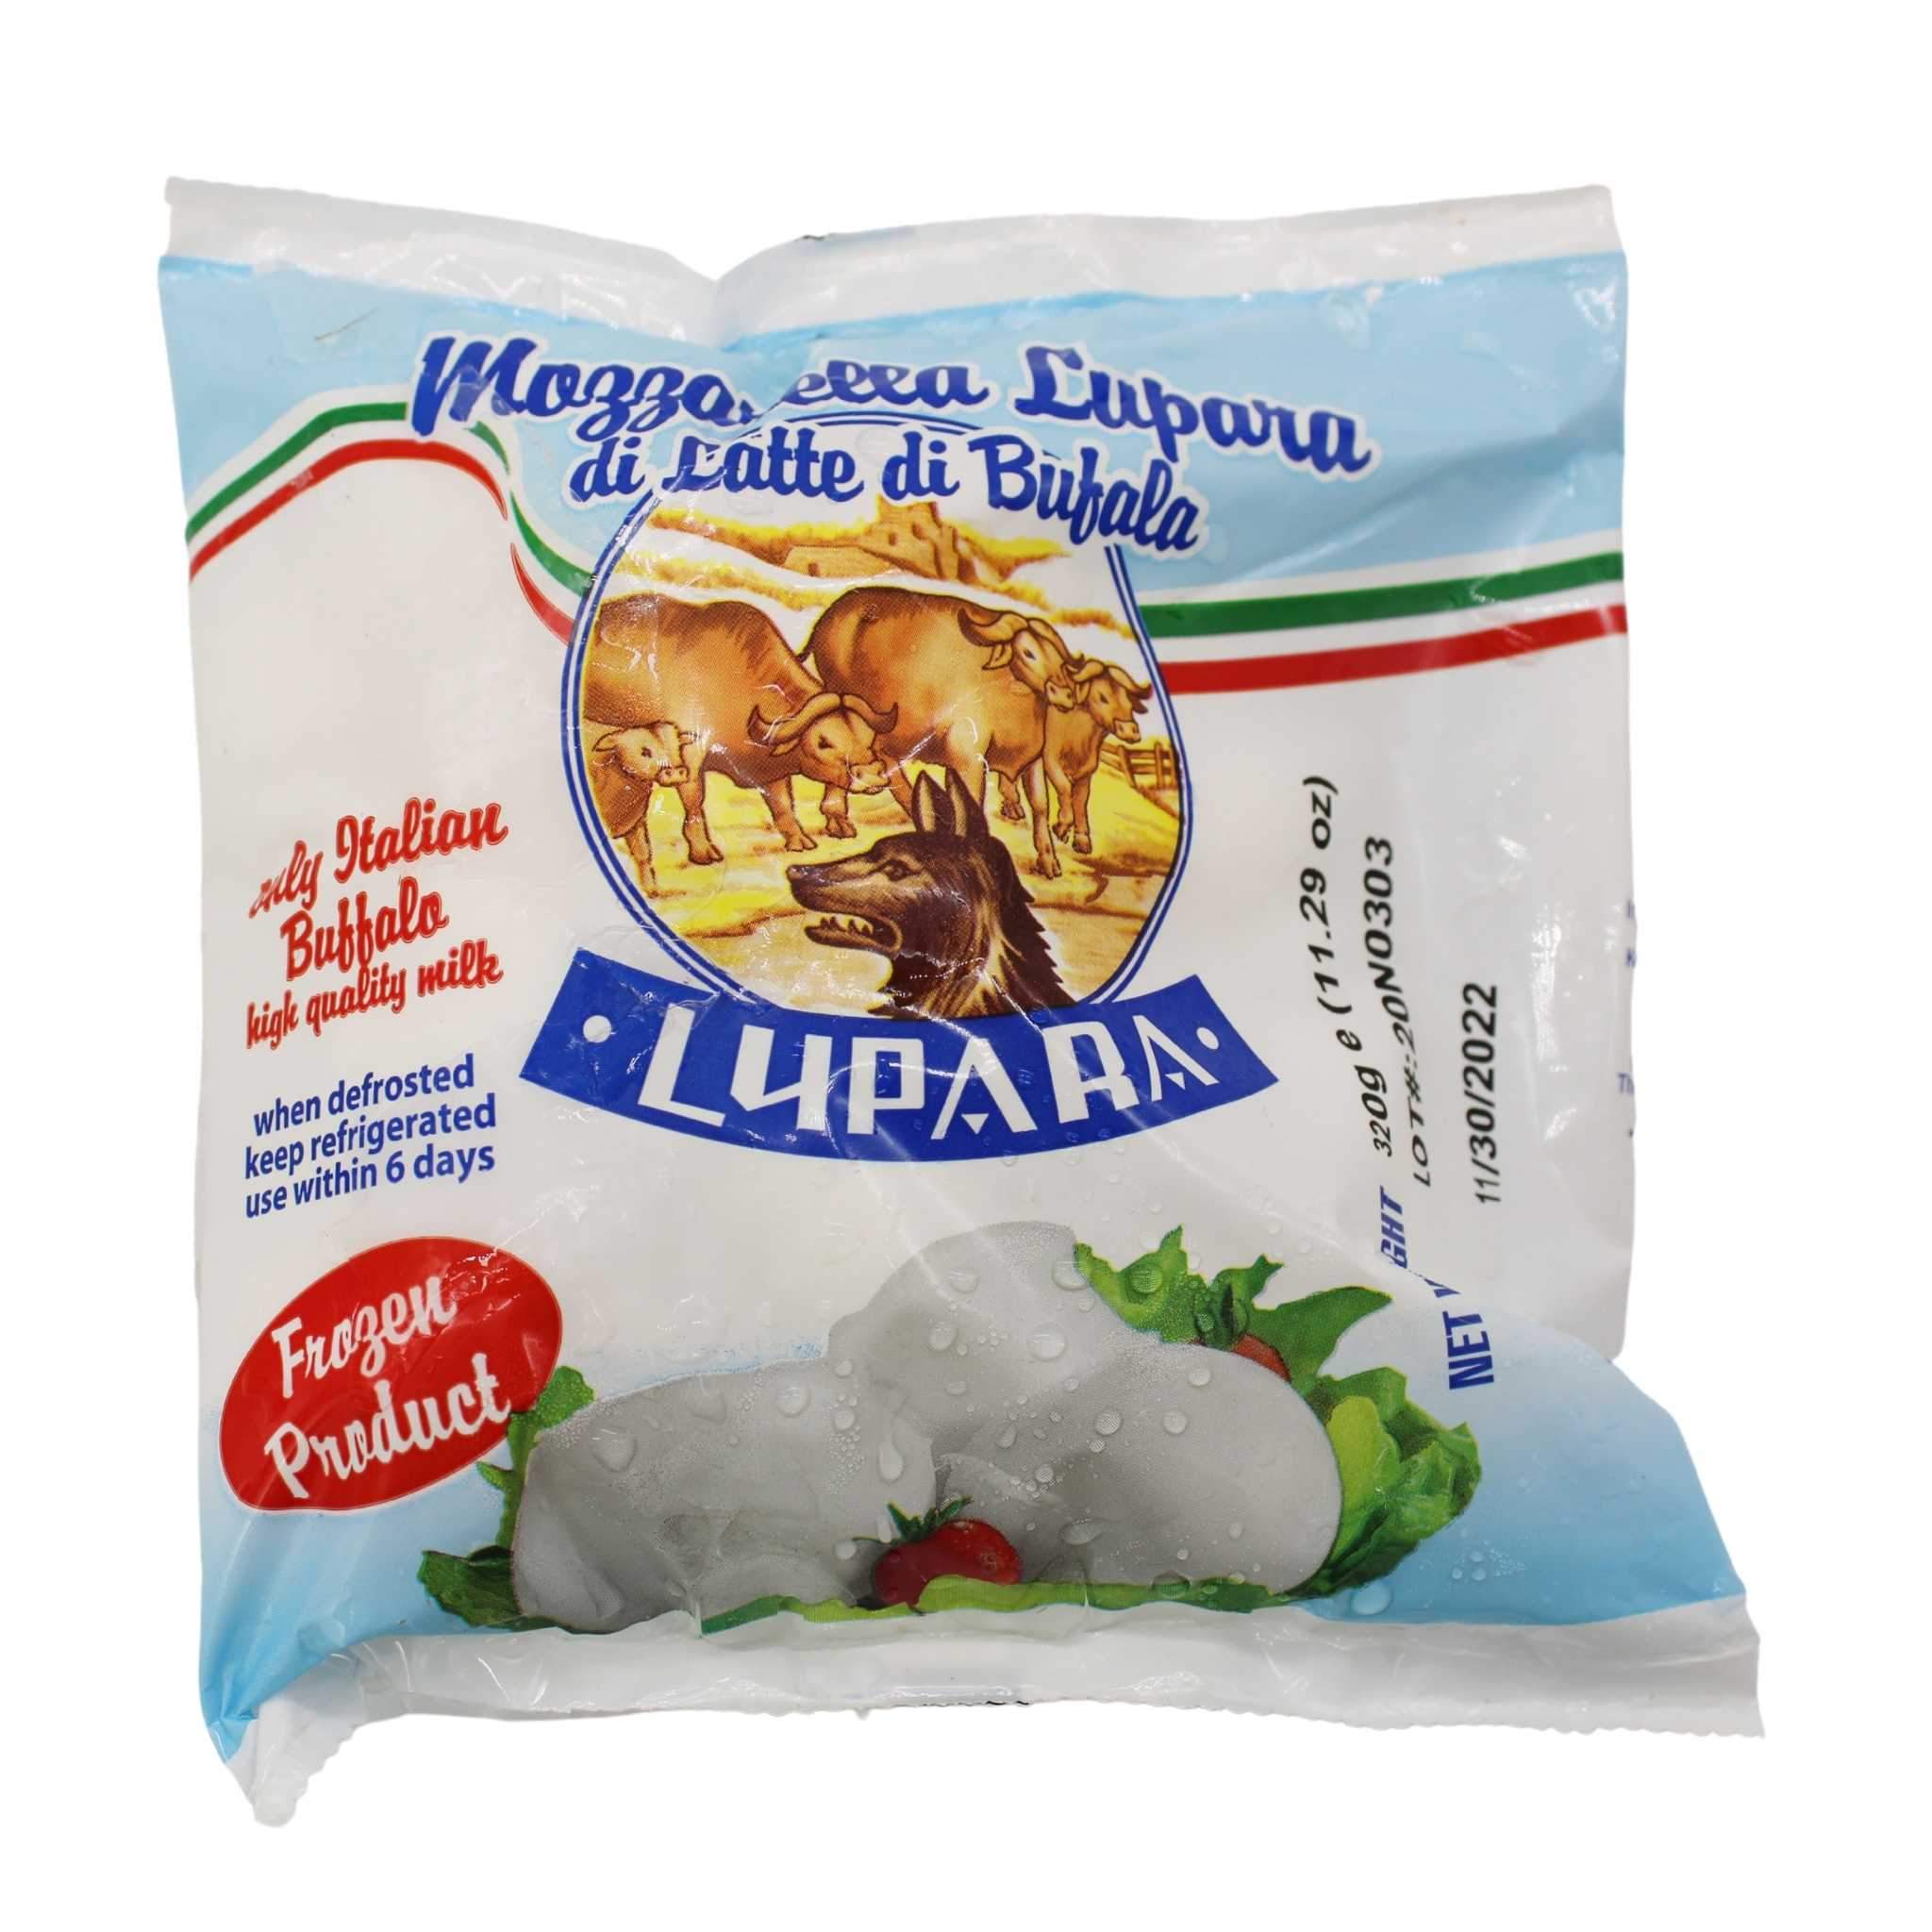 One Bag of Lupara Buffalo Mozzarella Balls